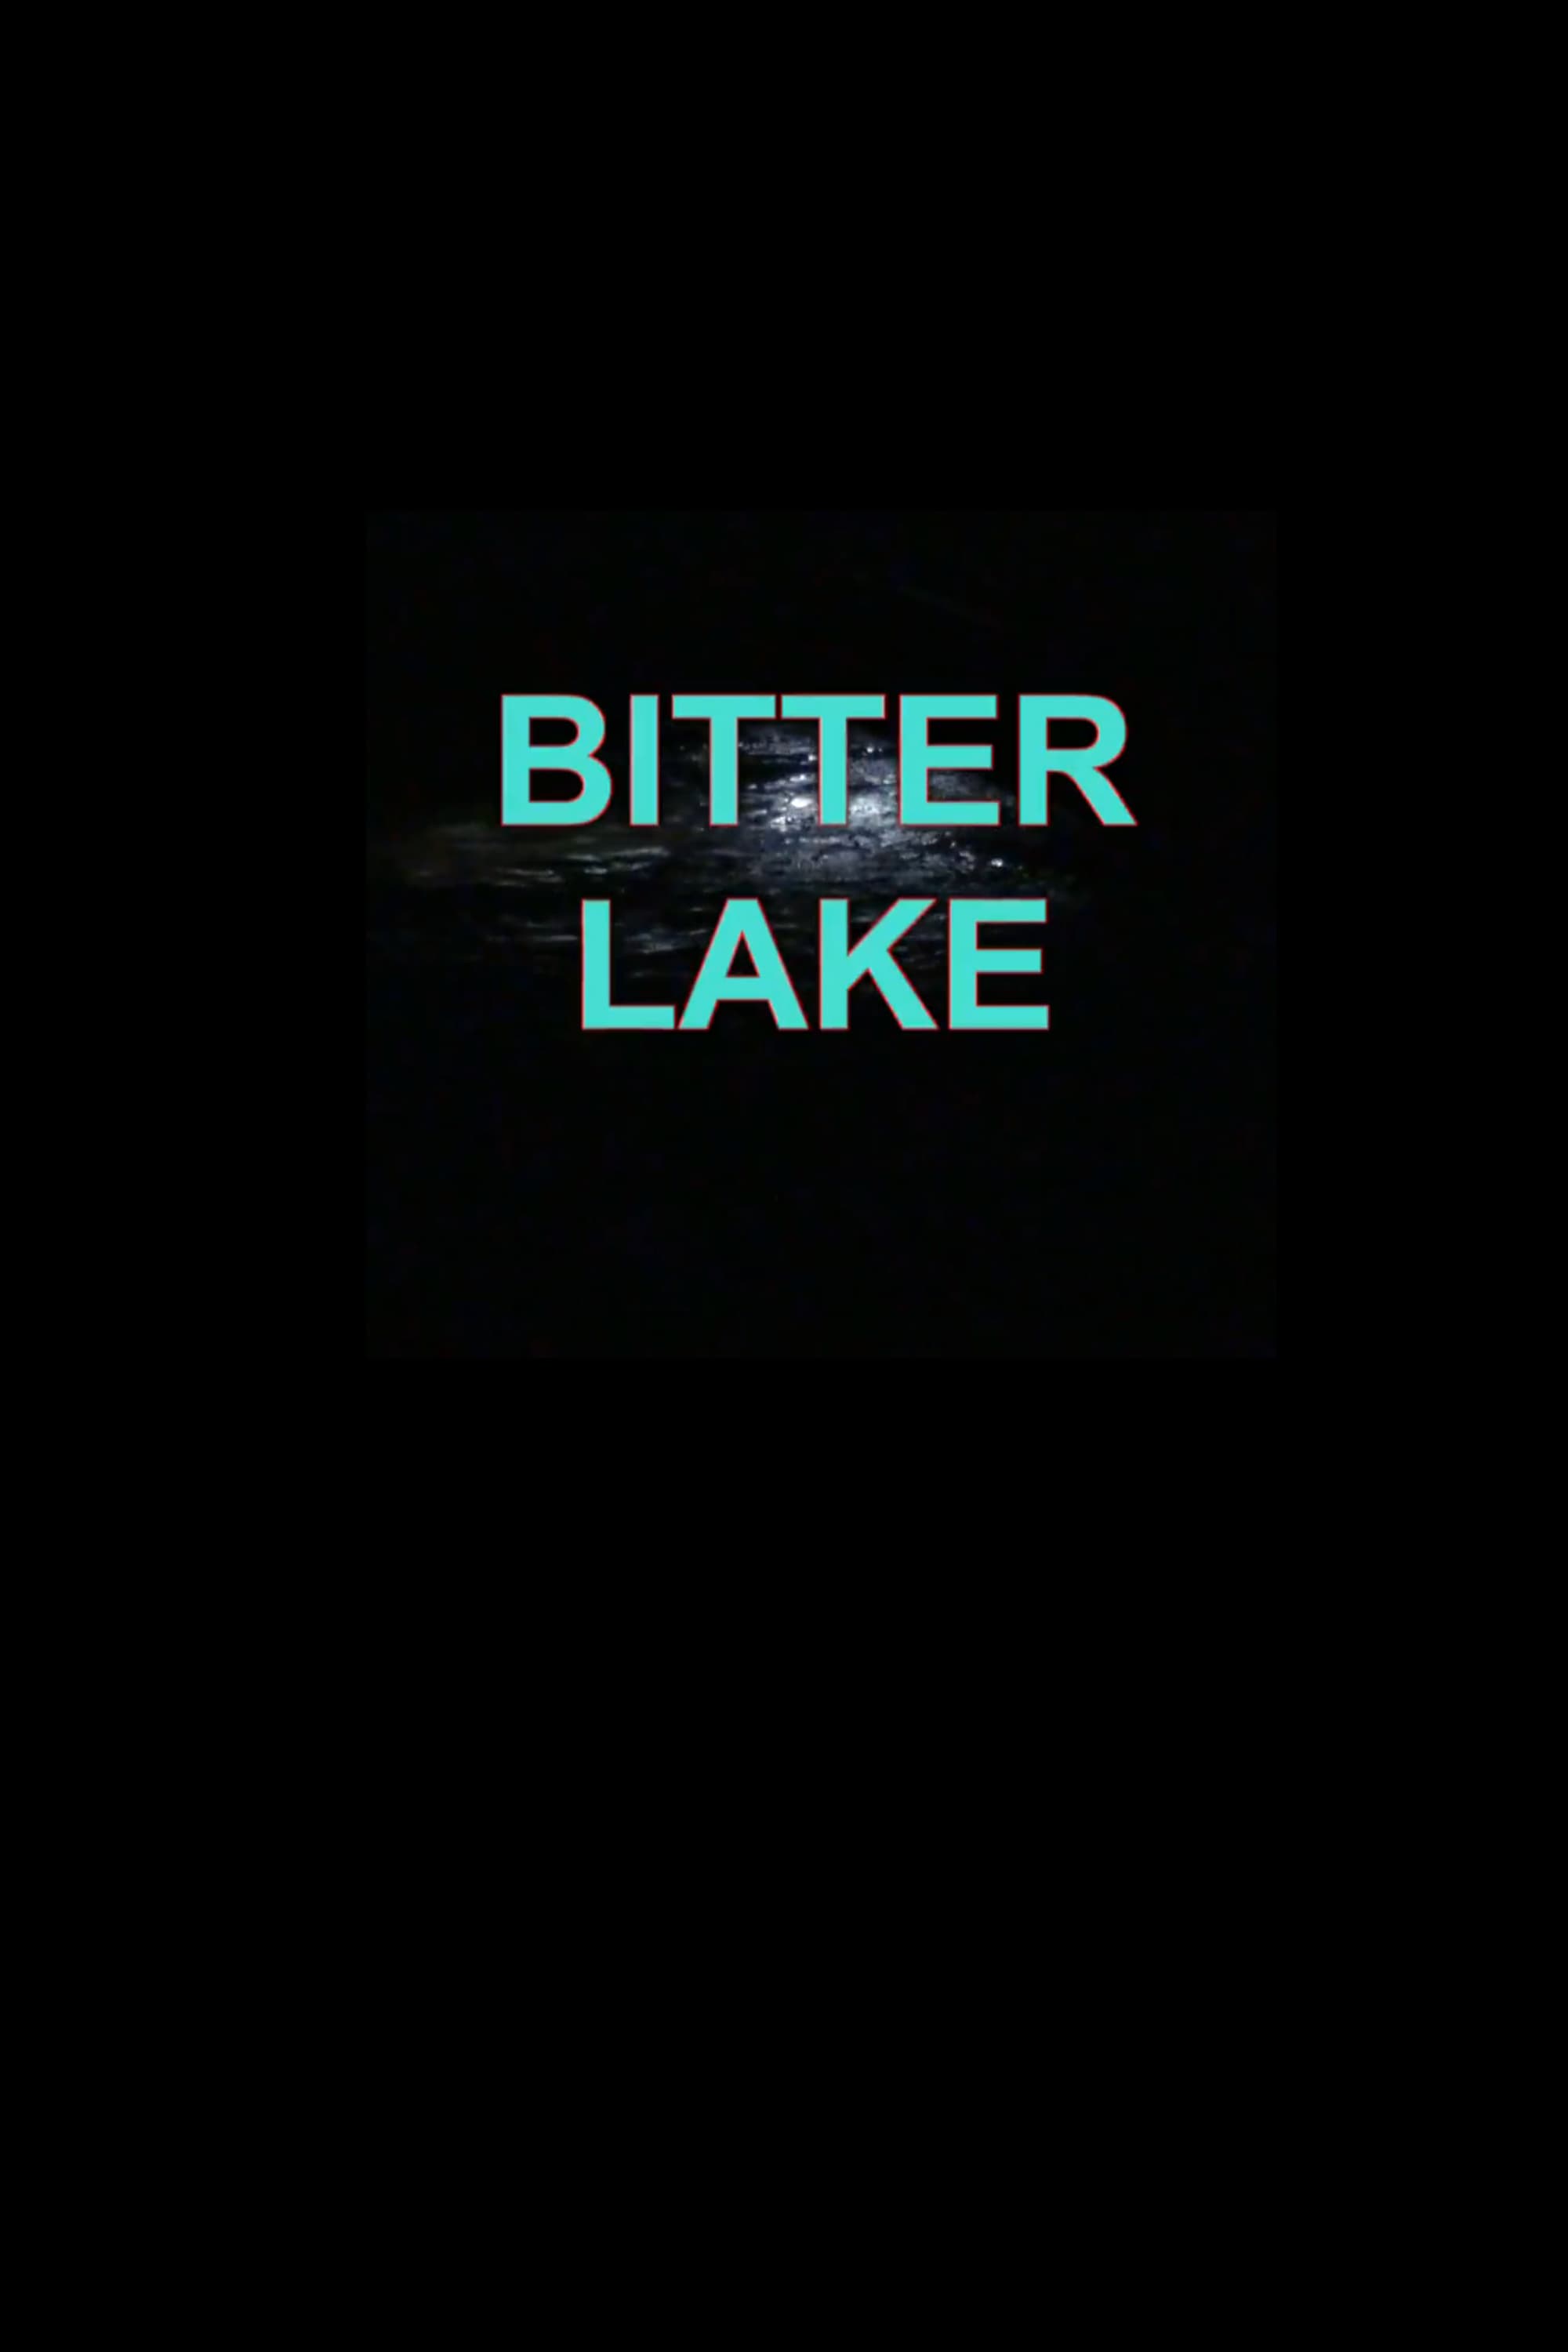 BITTER LAKE